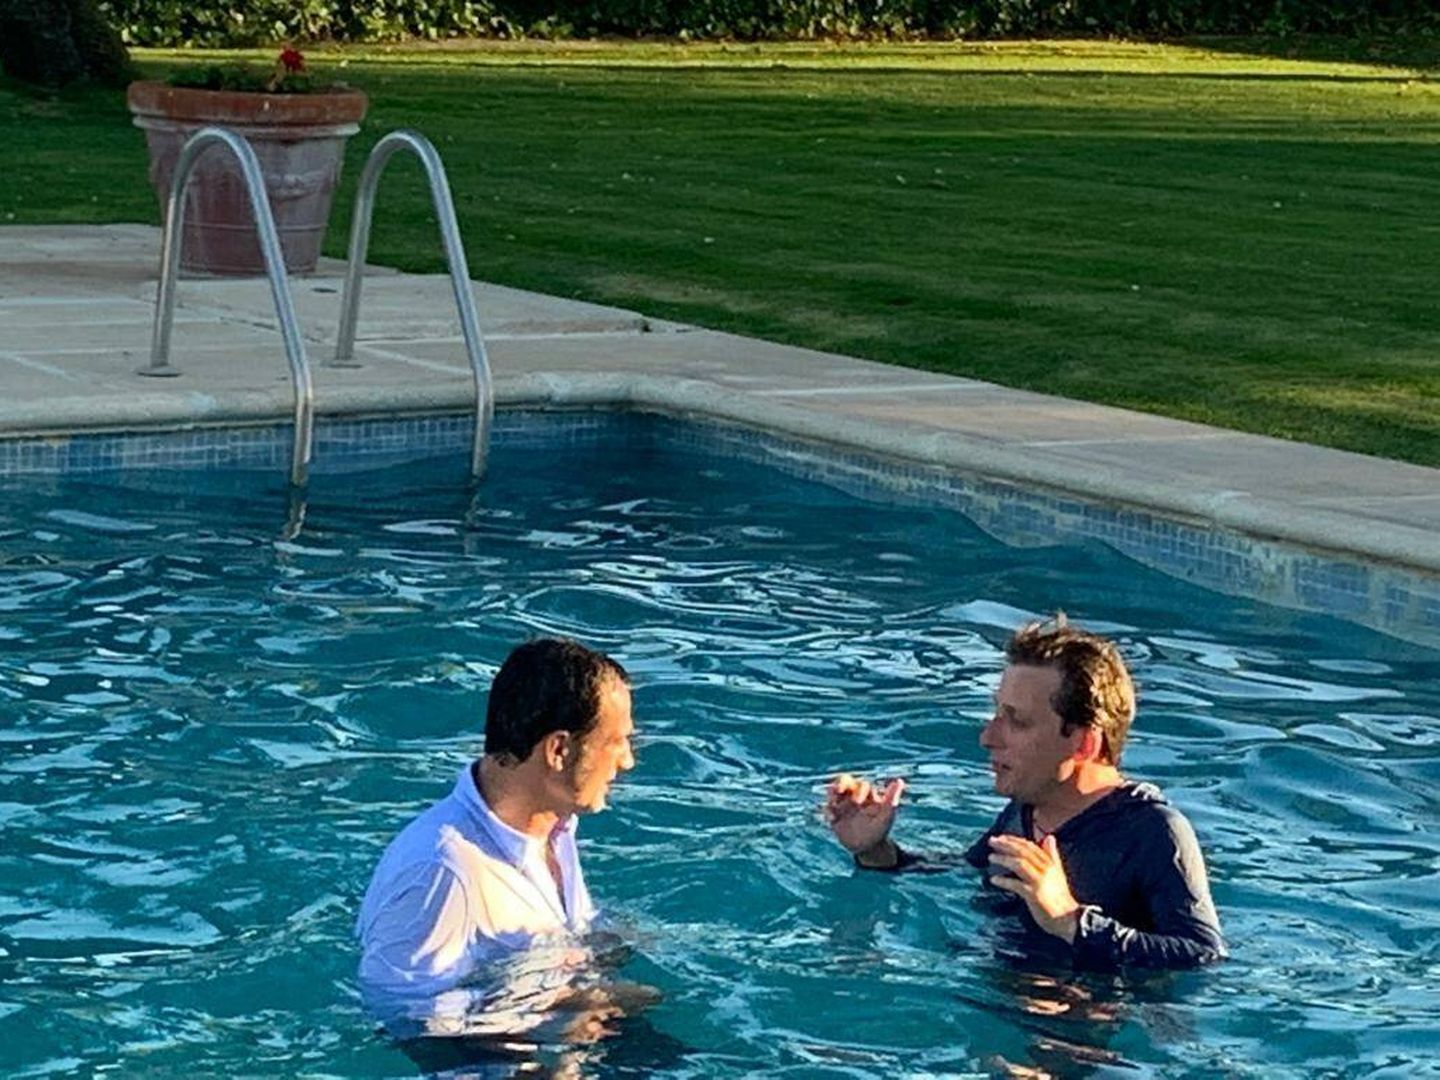 Foto cedida del alcalde de Madrid bañándose en una piscina de Motril.